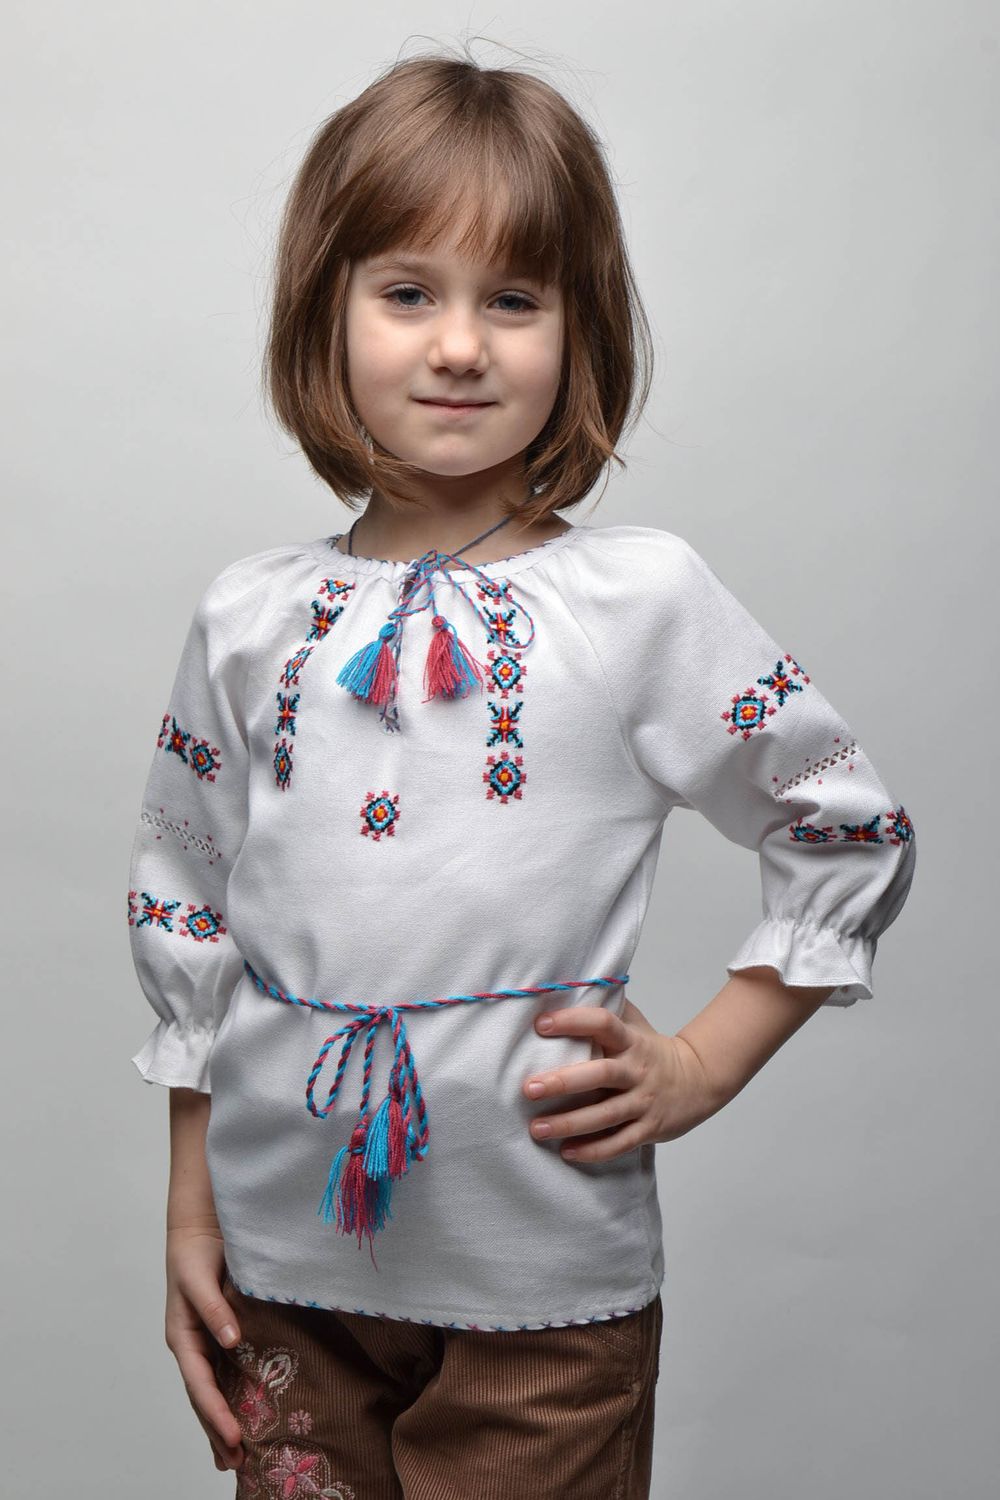 Camisa bordada con motivos vegetales para niña de 5-7 años de edad foto 1